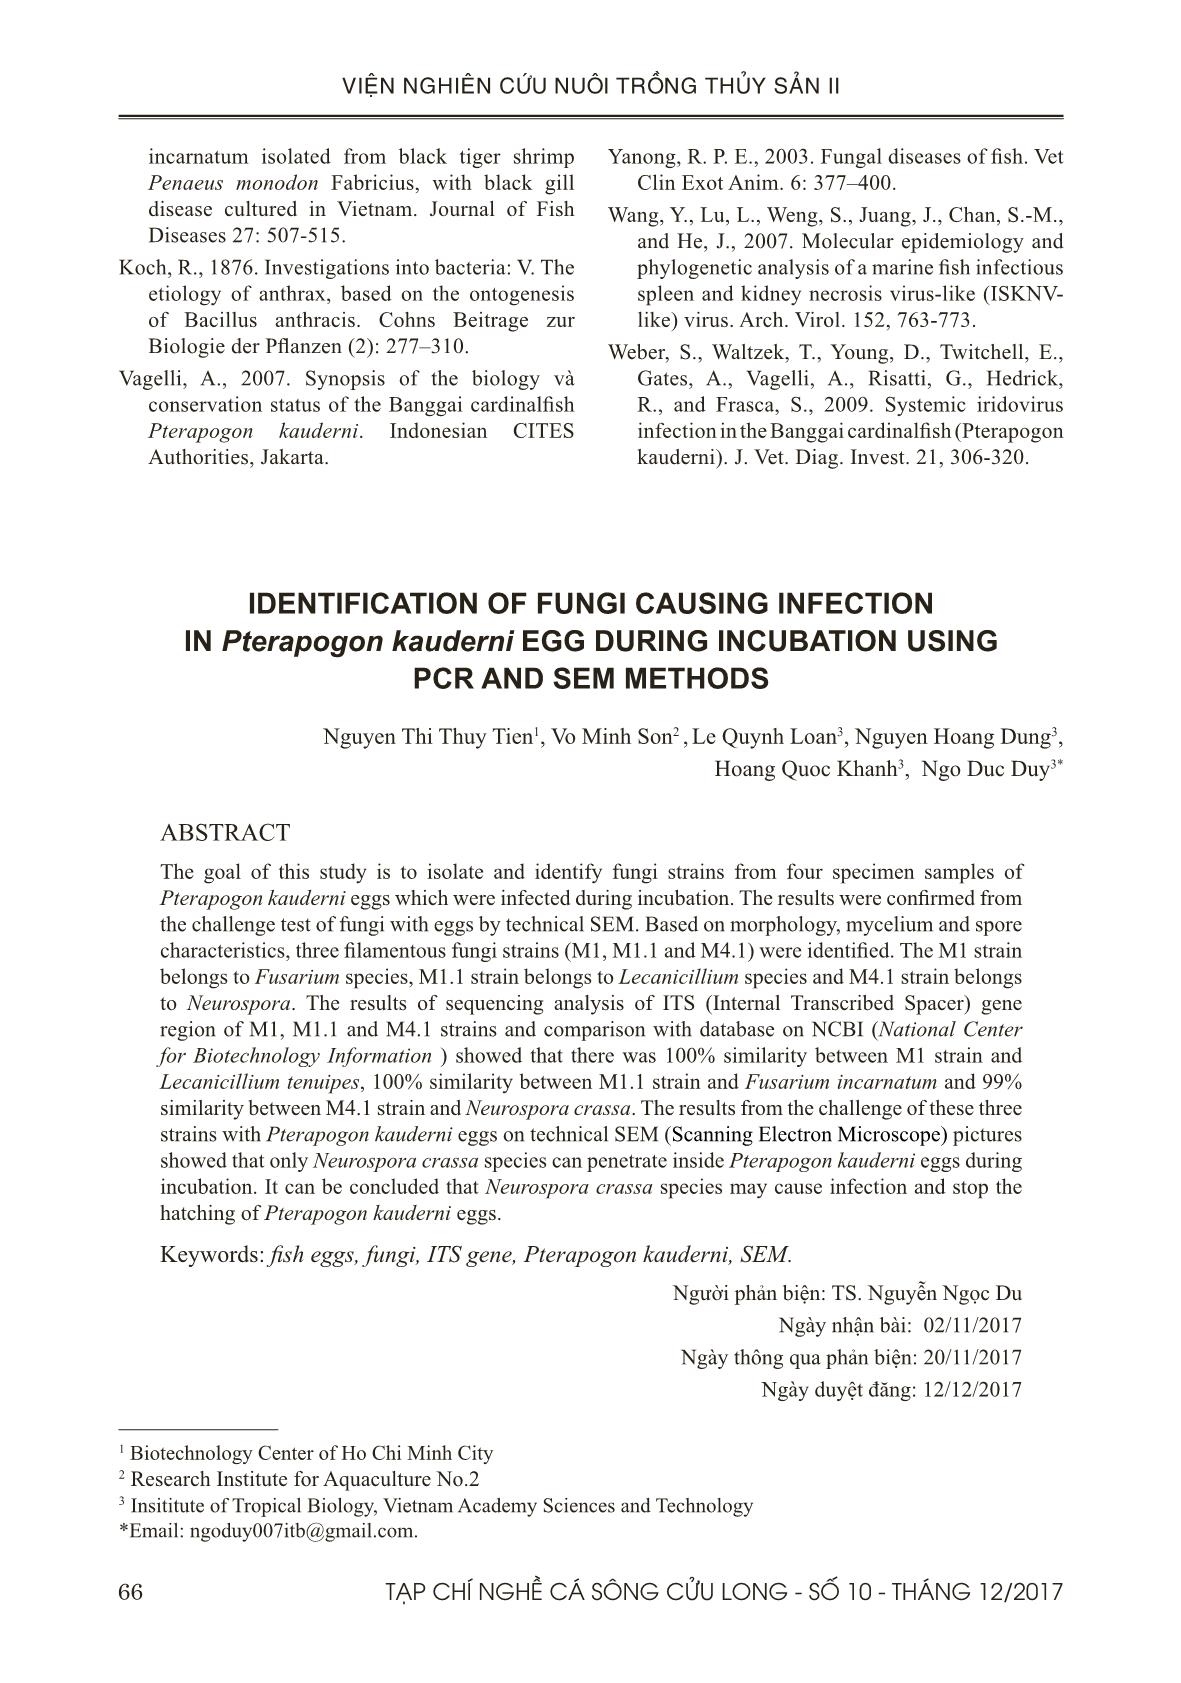 Xác định một số nấm gây bệnh trên trứng cá bá chủ (pterapogon kauderni) trong quá trình ấp bằng phương pháp pcr và sem trang 9